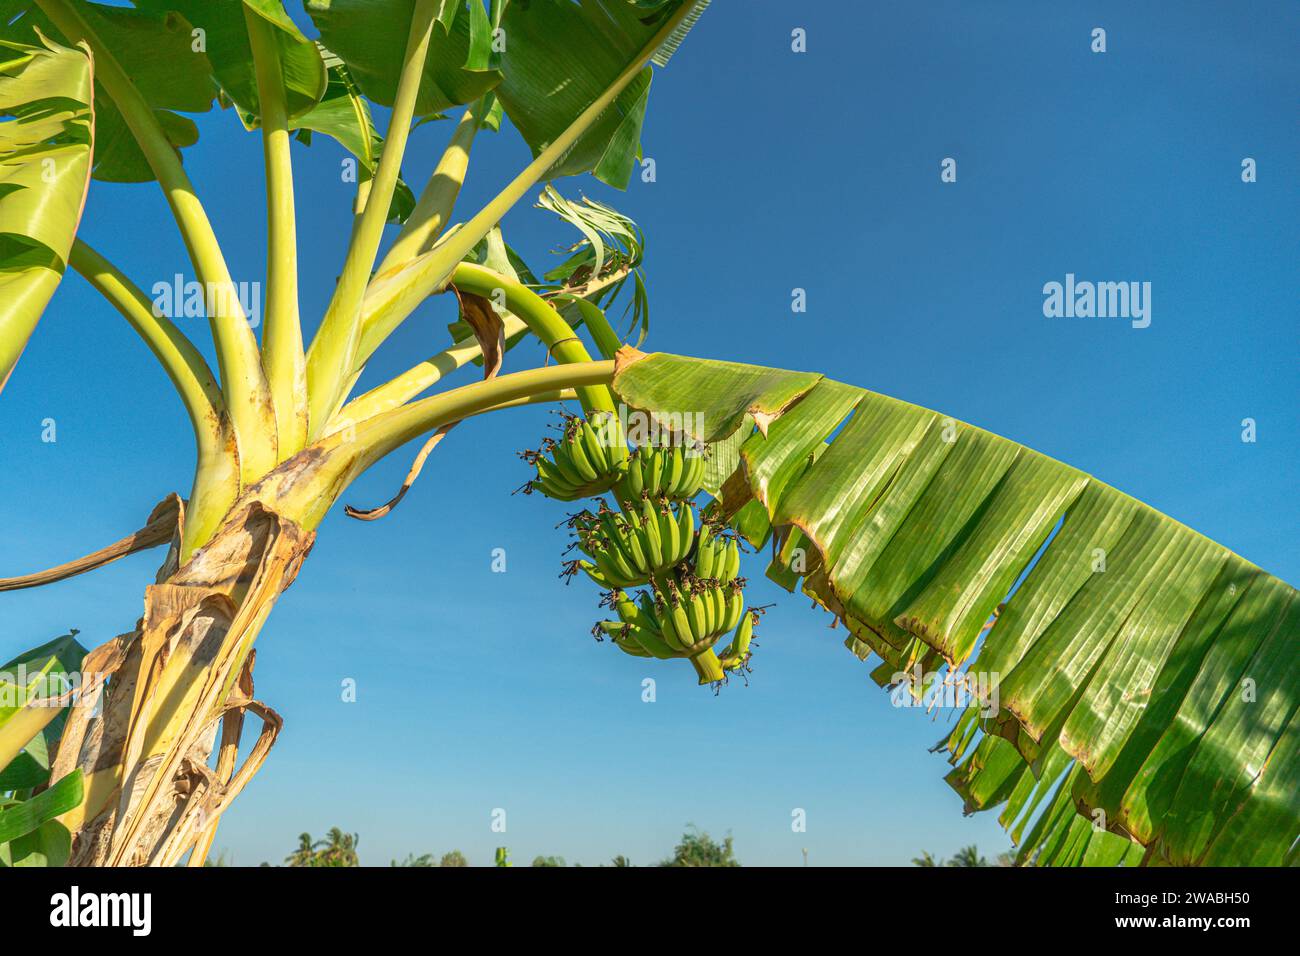 Bananenstücke mit Blume, die am Baum vor blauem Himmel hängt. Bananenblüte, Gemüseblume Banane lila Farbe blühender Rip für Lebensmittel Stockfoto